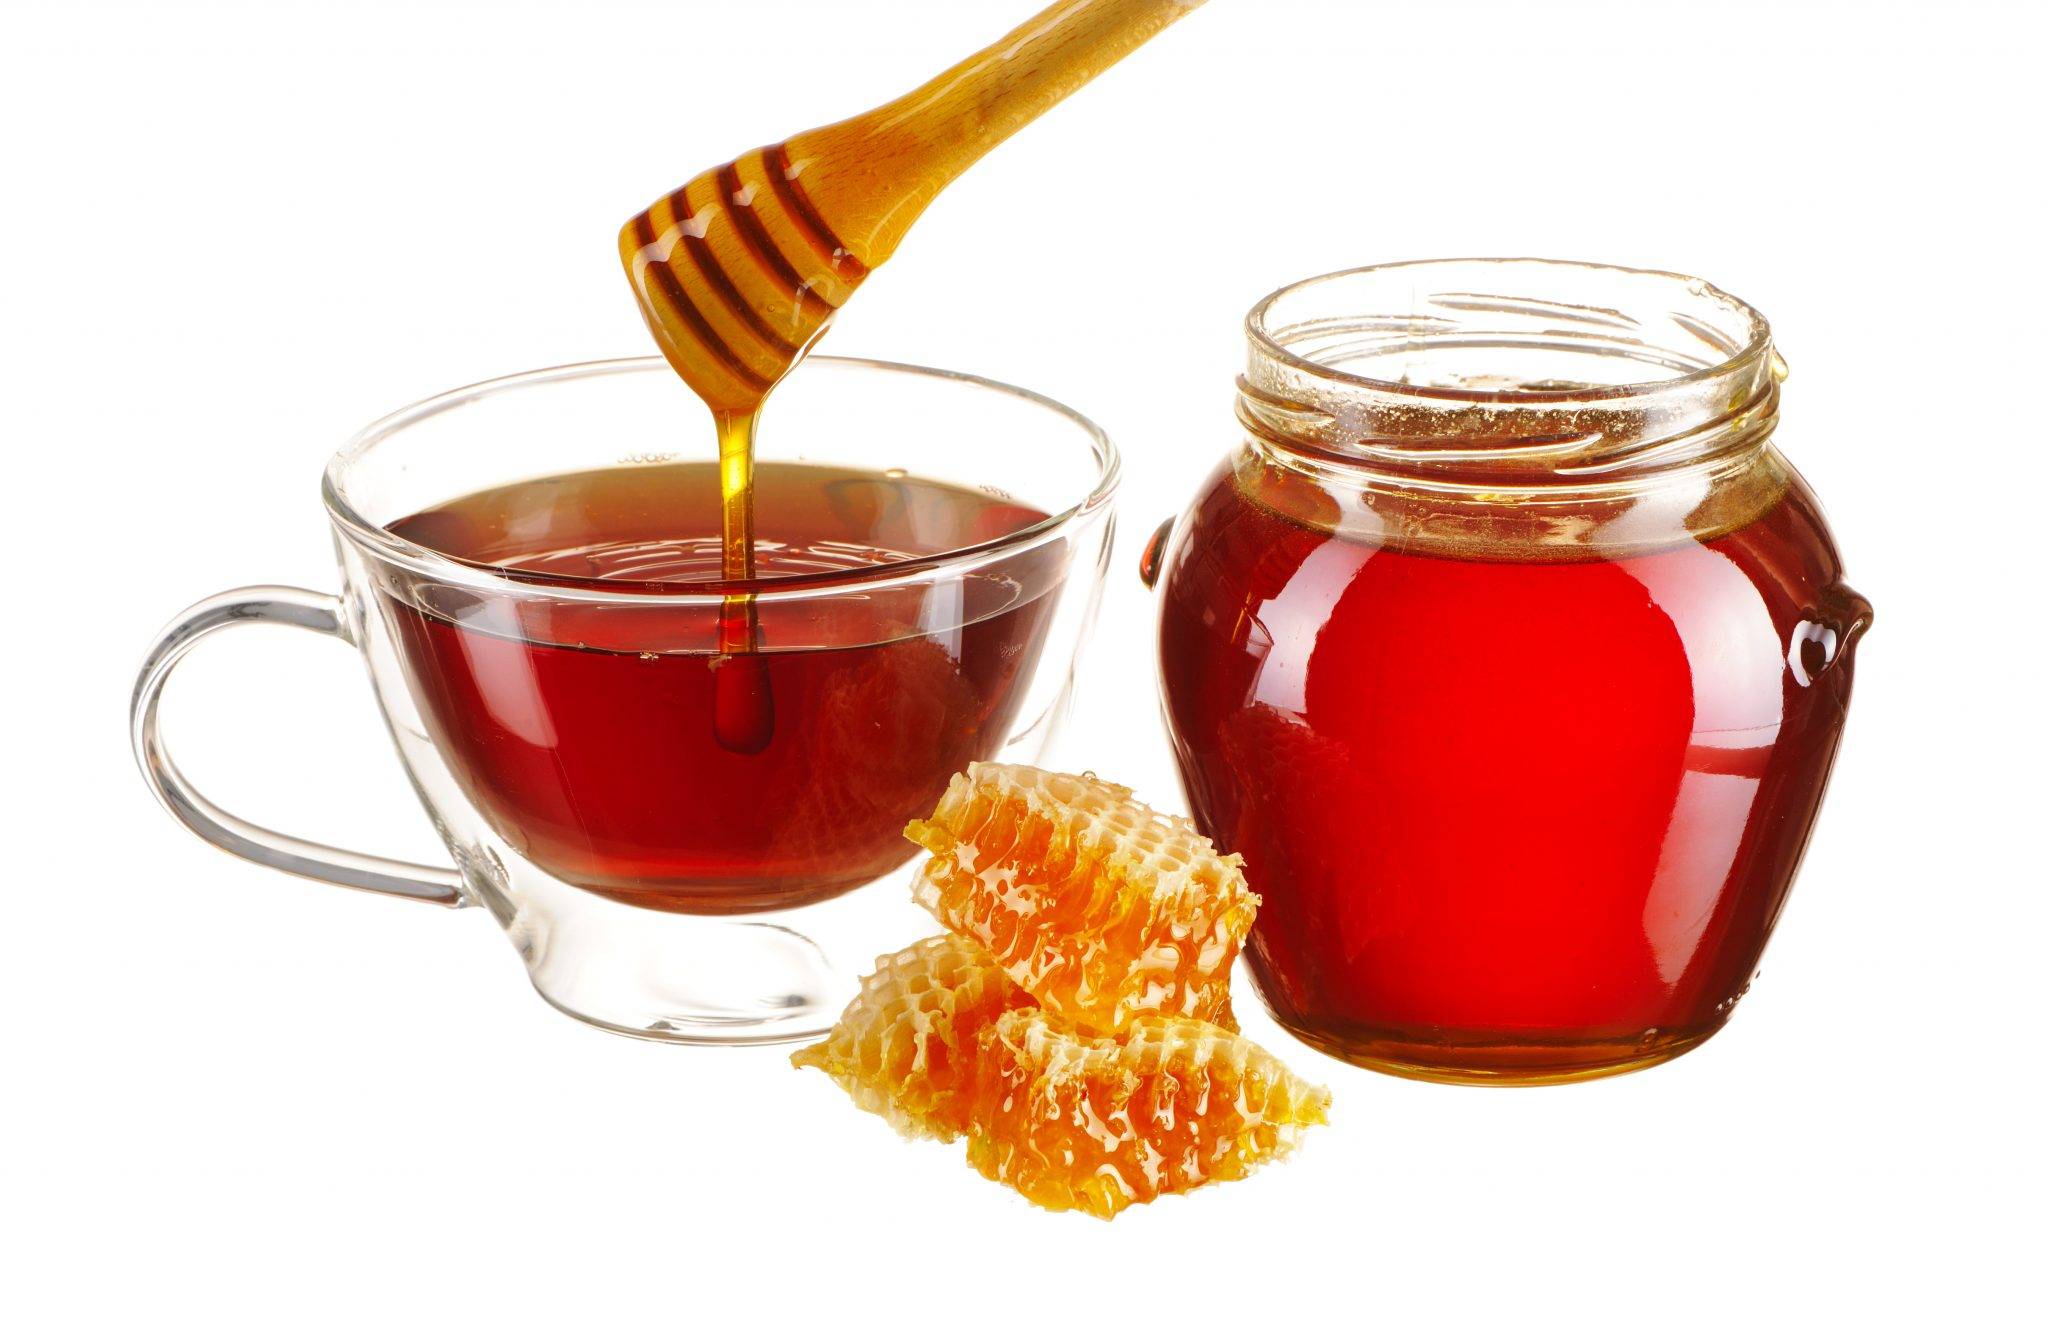 Можно ли применять мёд при повышенной температуре - всё о пользе и вреде средств с продуктом для детей и взрослых